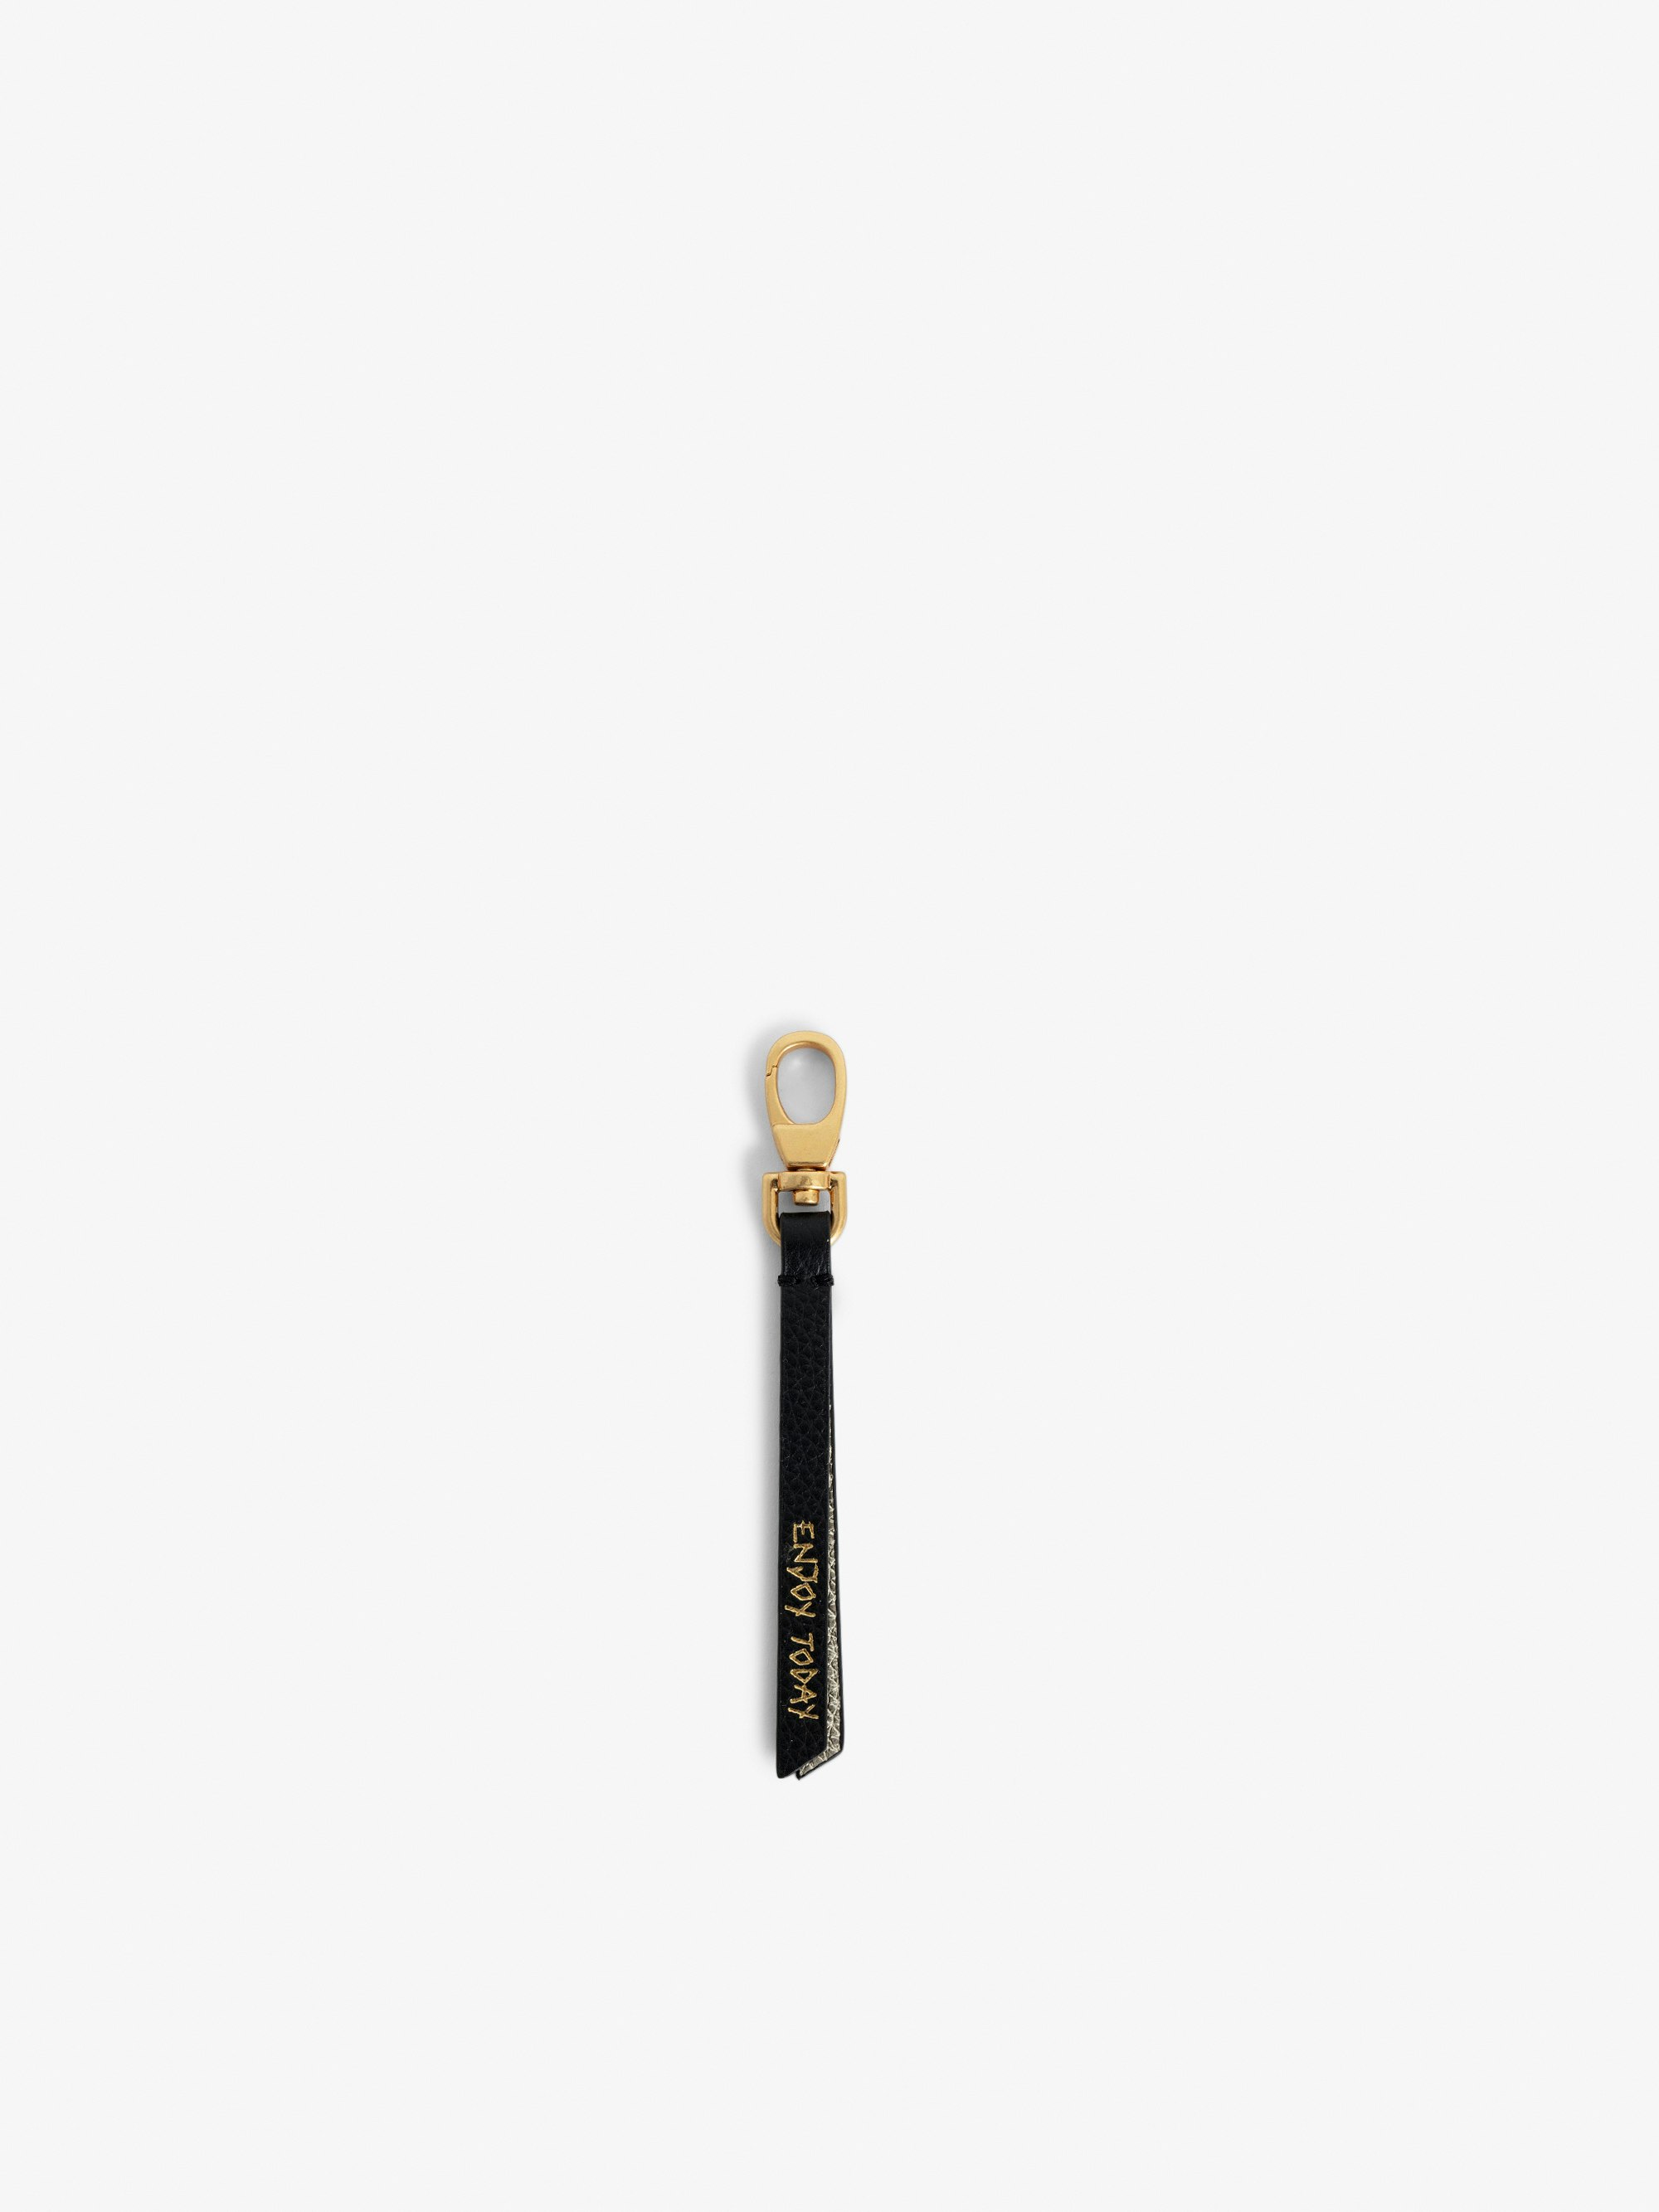 Schlüsselanhänger Love Link - Schlüsselanhänger mit Riemen aus genarbtem Leder mit Schriftzug „Enjoy Today“.